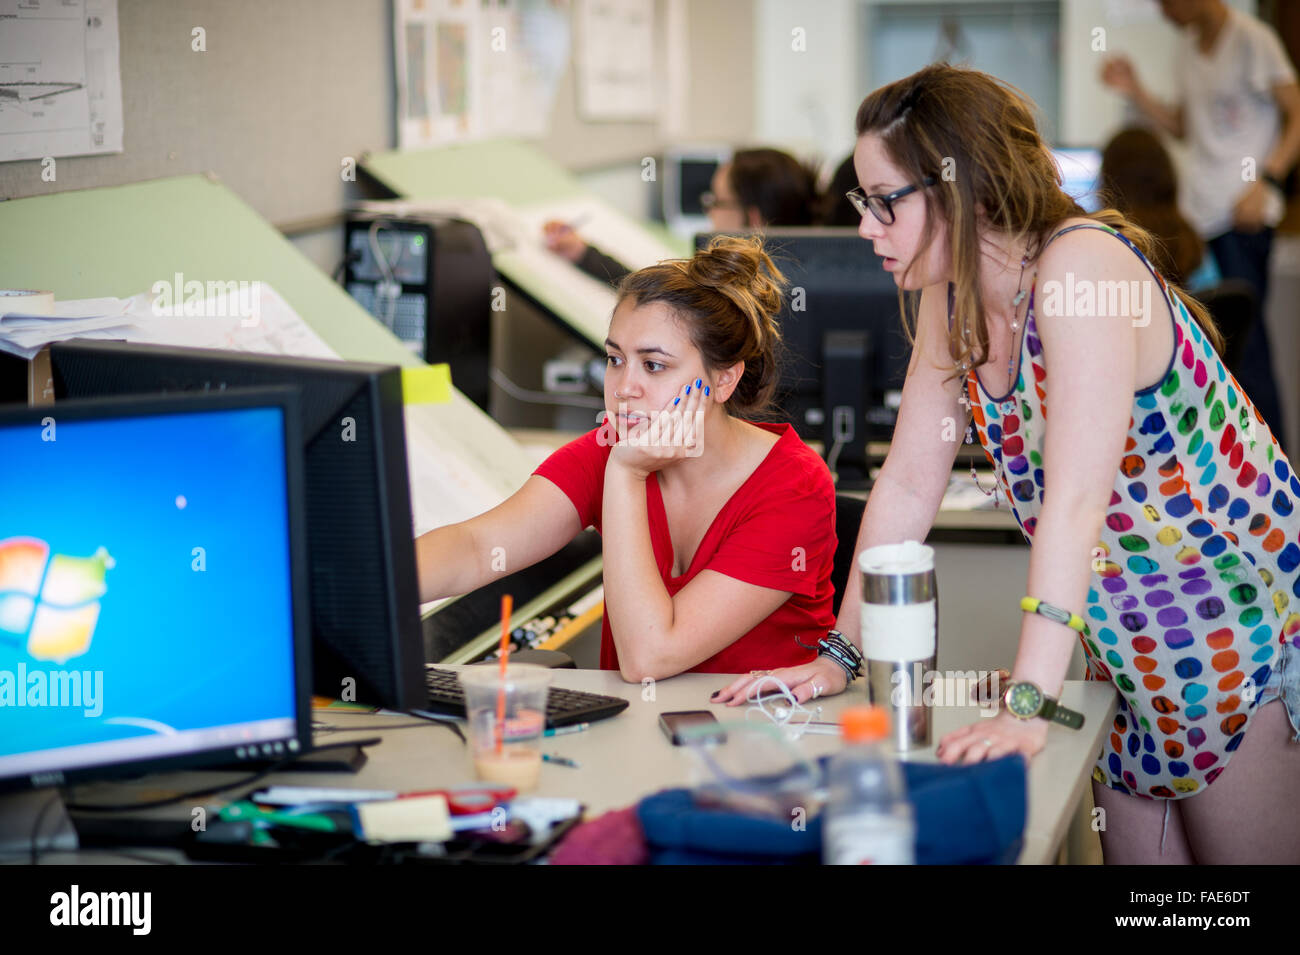 Les filles qui travaillent ensemble sur un ordinateur. Banque D'Images